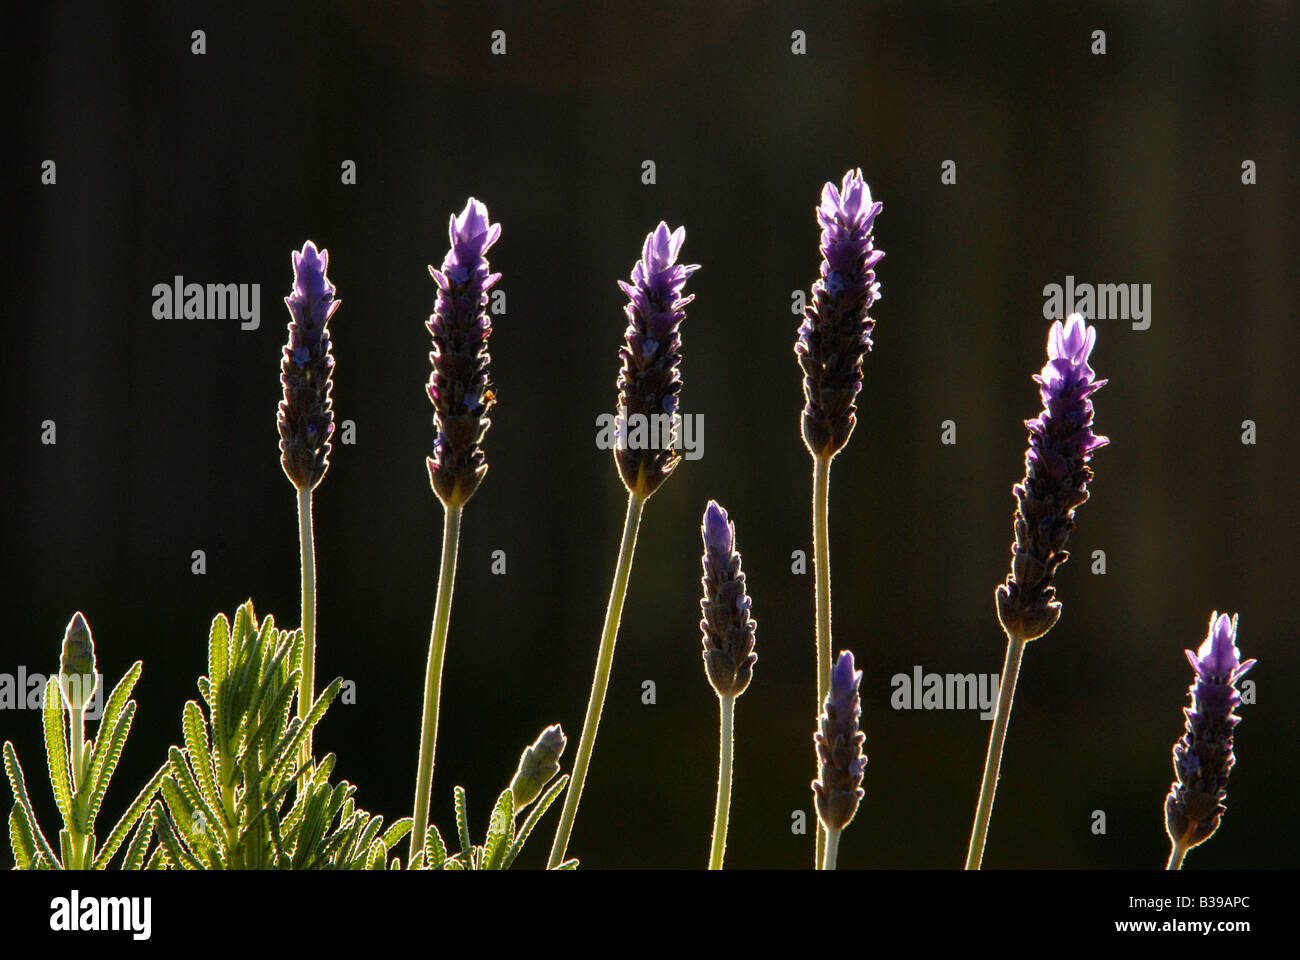 Backlit close-up of lavendar plants against dark background. Stock Photo